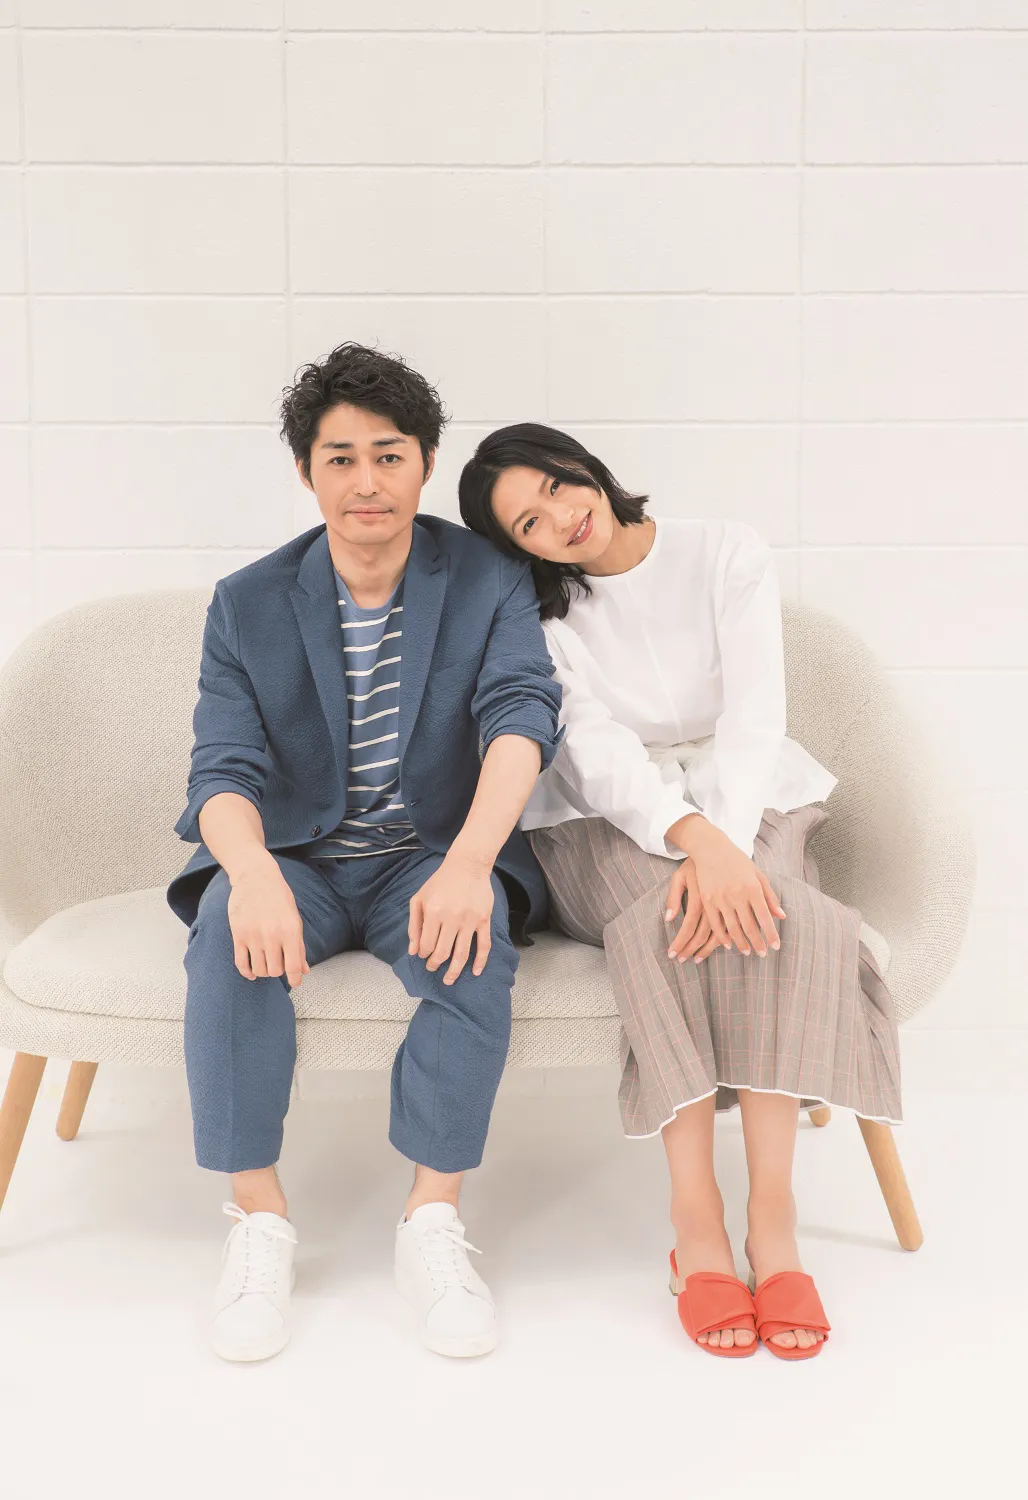 6月8日(金)公開の映画「家に帰ると妻が必ず死んだふりをしています。」で共演する榮倉奈々と安田顕